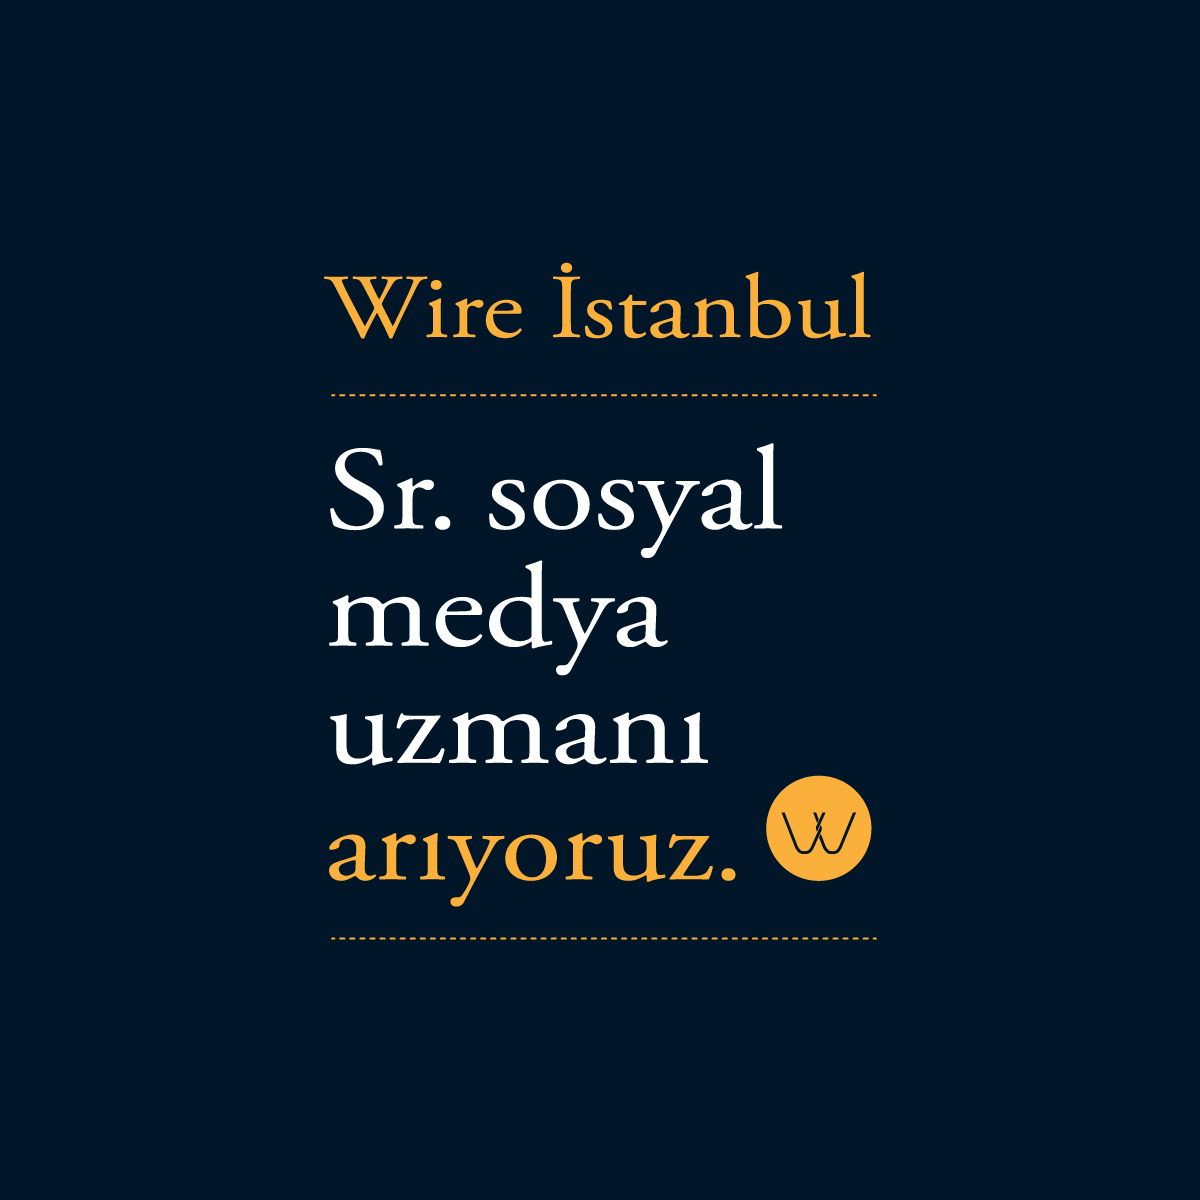 Wire İstanbul, Senior Sosyal Medya uzmanı arıyor!